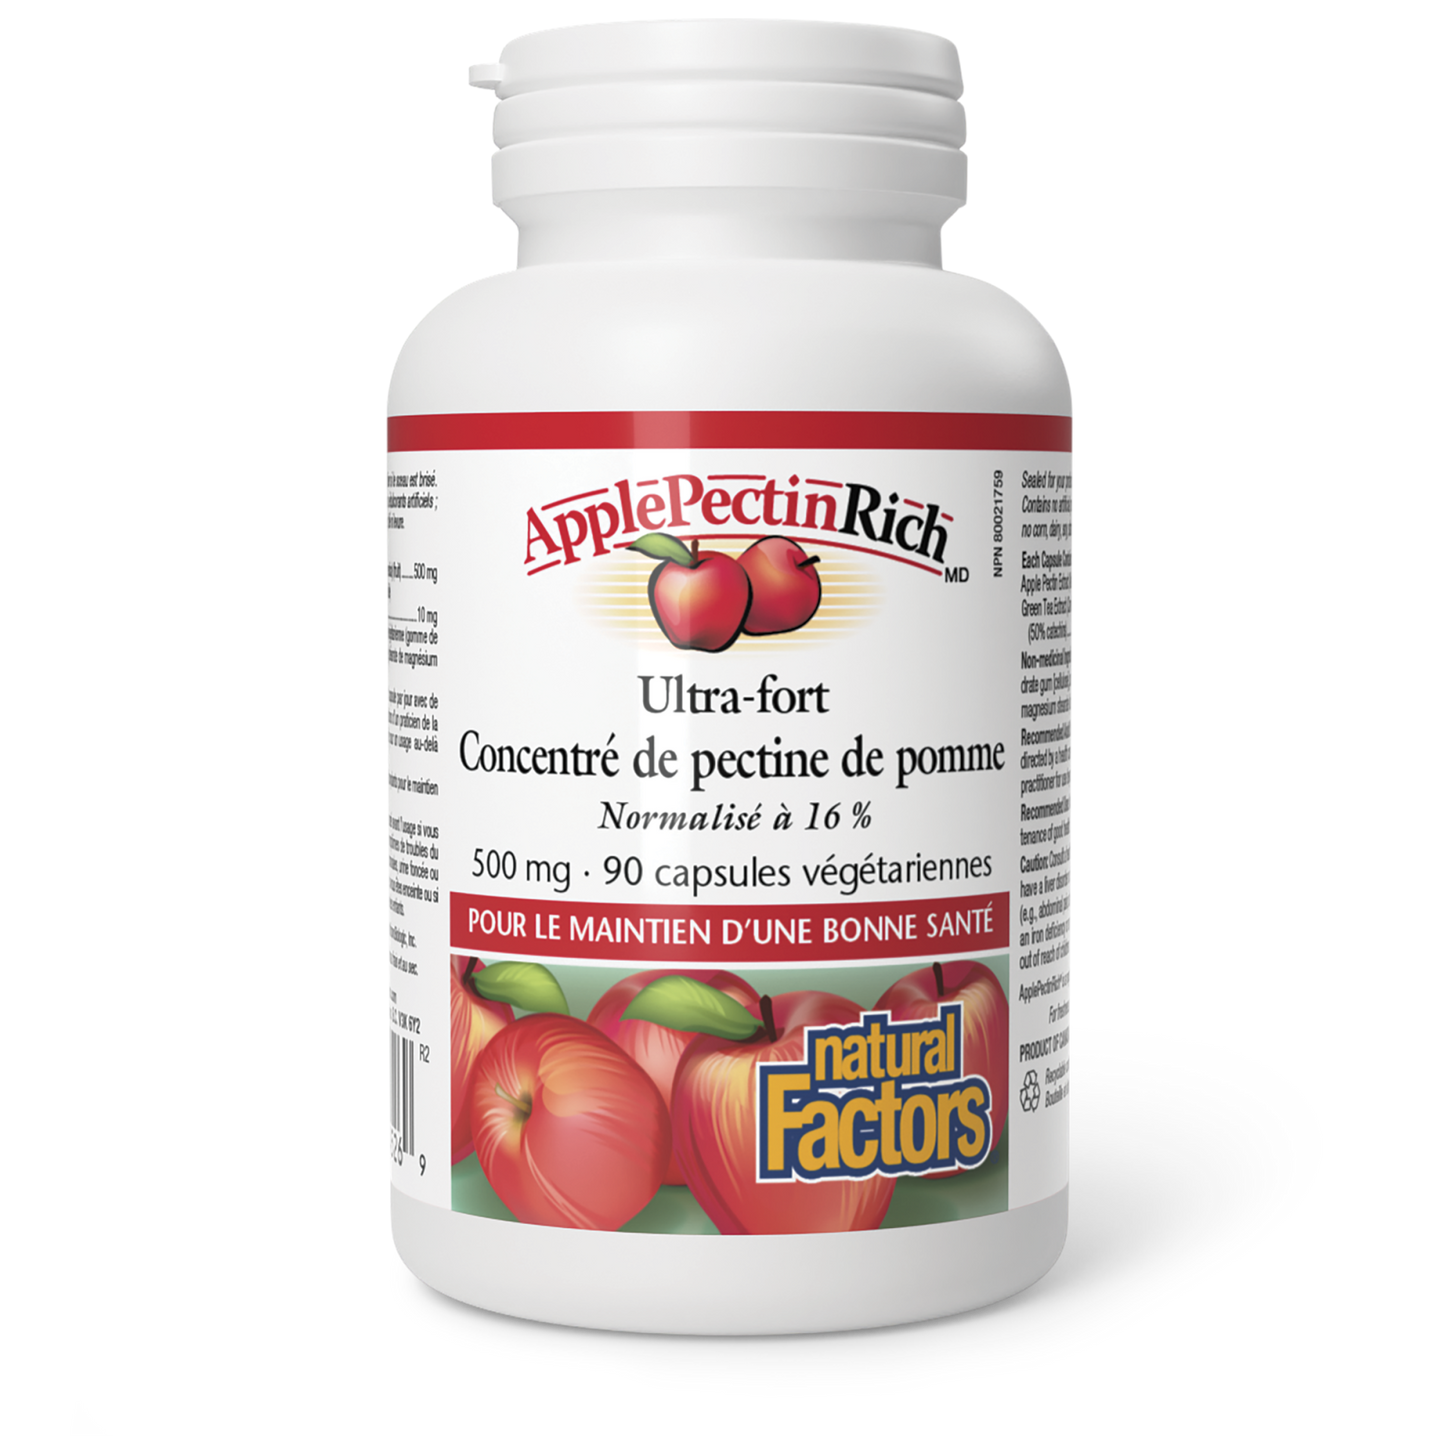 ApplePectinRich Ultra-fort Concentré de pectine de pomme 500 mg, Natural Factors|v|image|4526